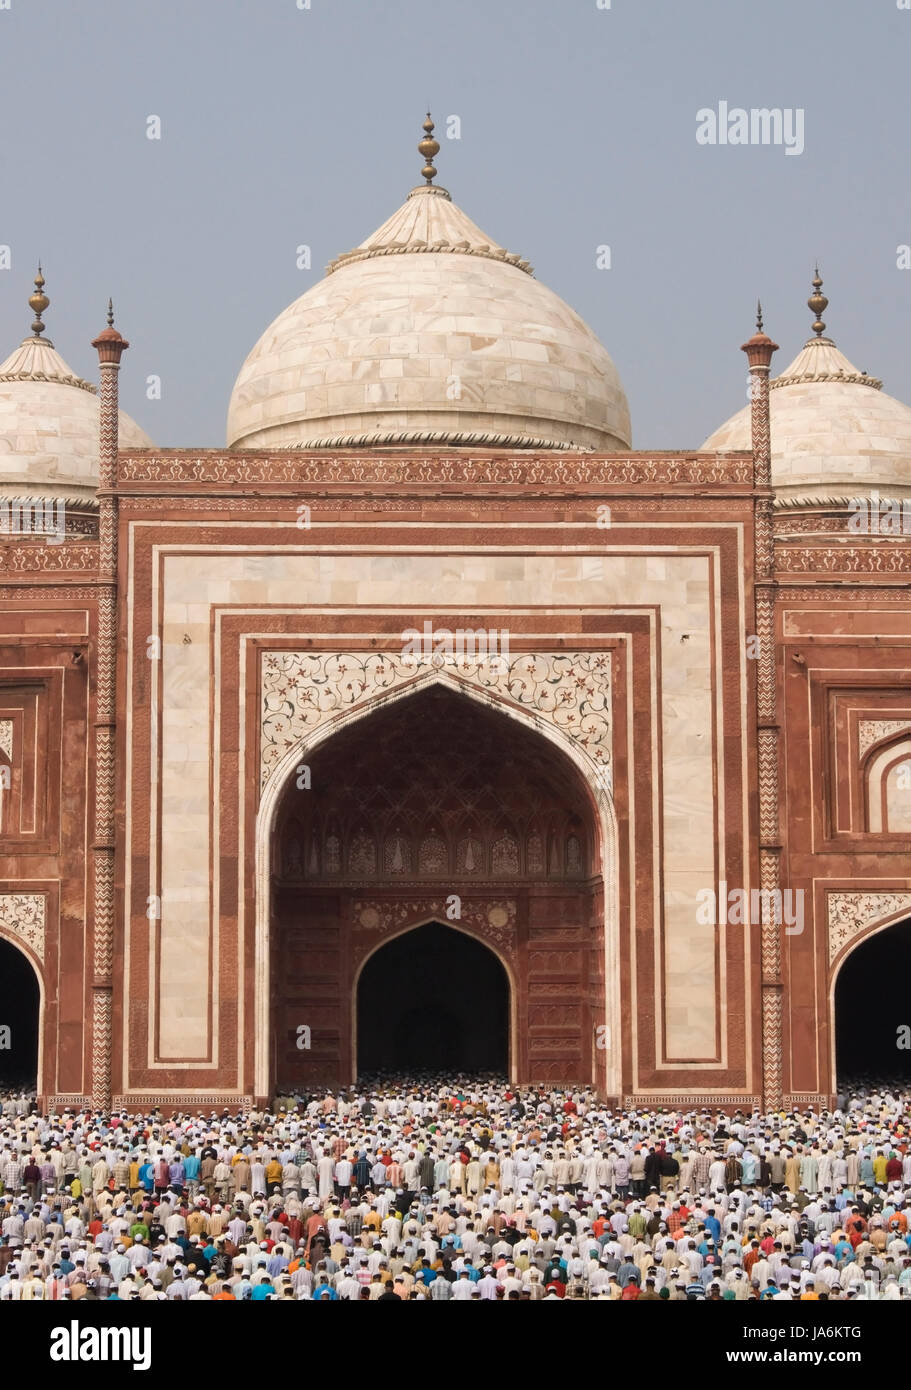 Tausende versammeln sich vor der Moschee am Taj Mahal, das moslemische Festival von Eid Ul-Fitr in Agra, Uttar Pradesh, Indien zu feiern. Stockfoto